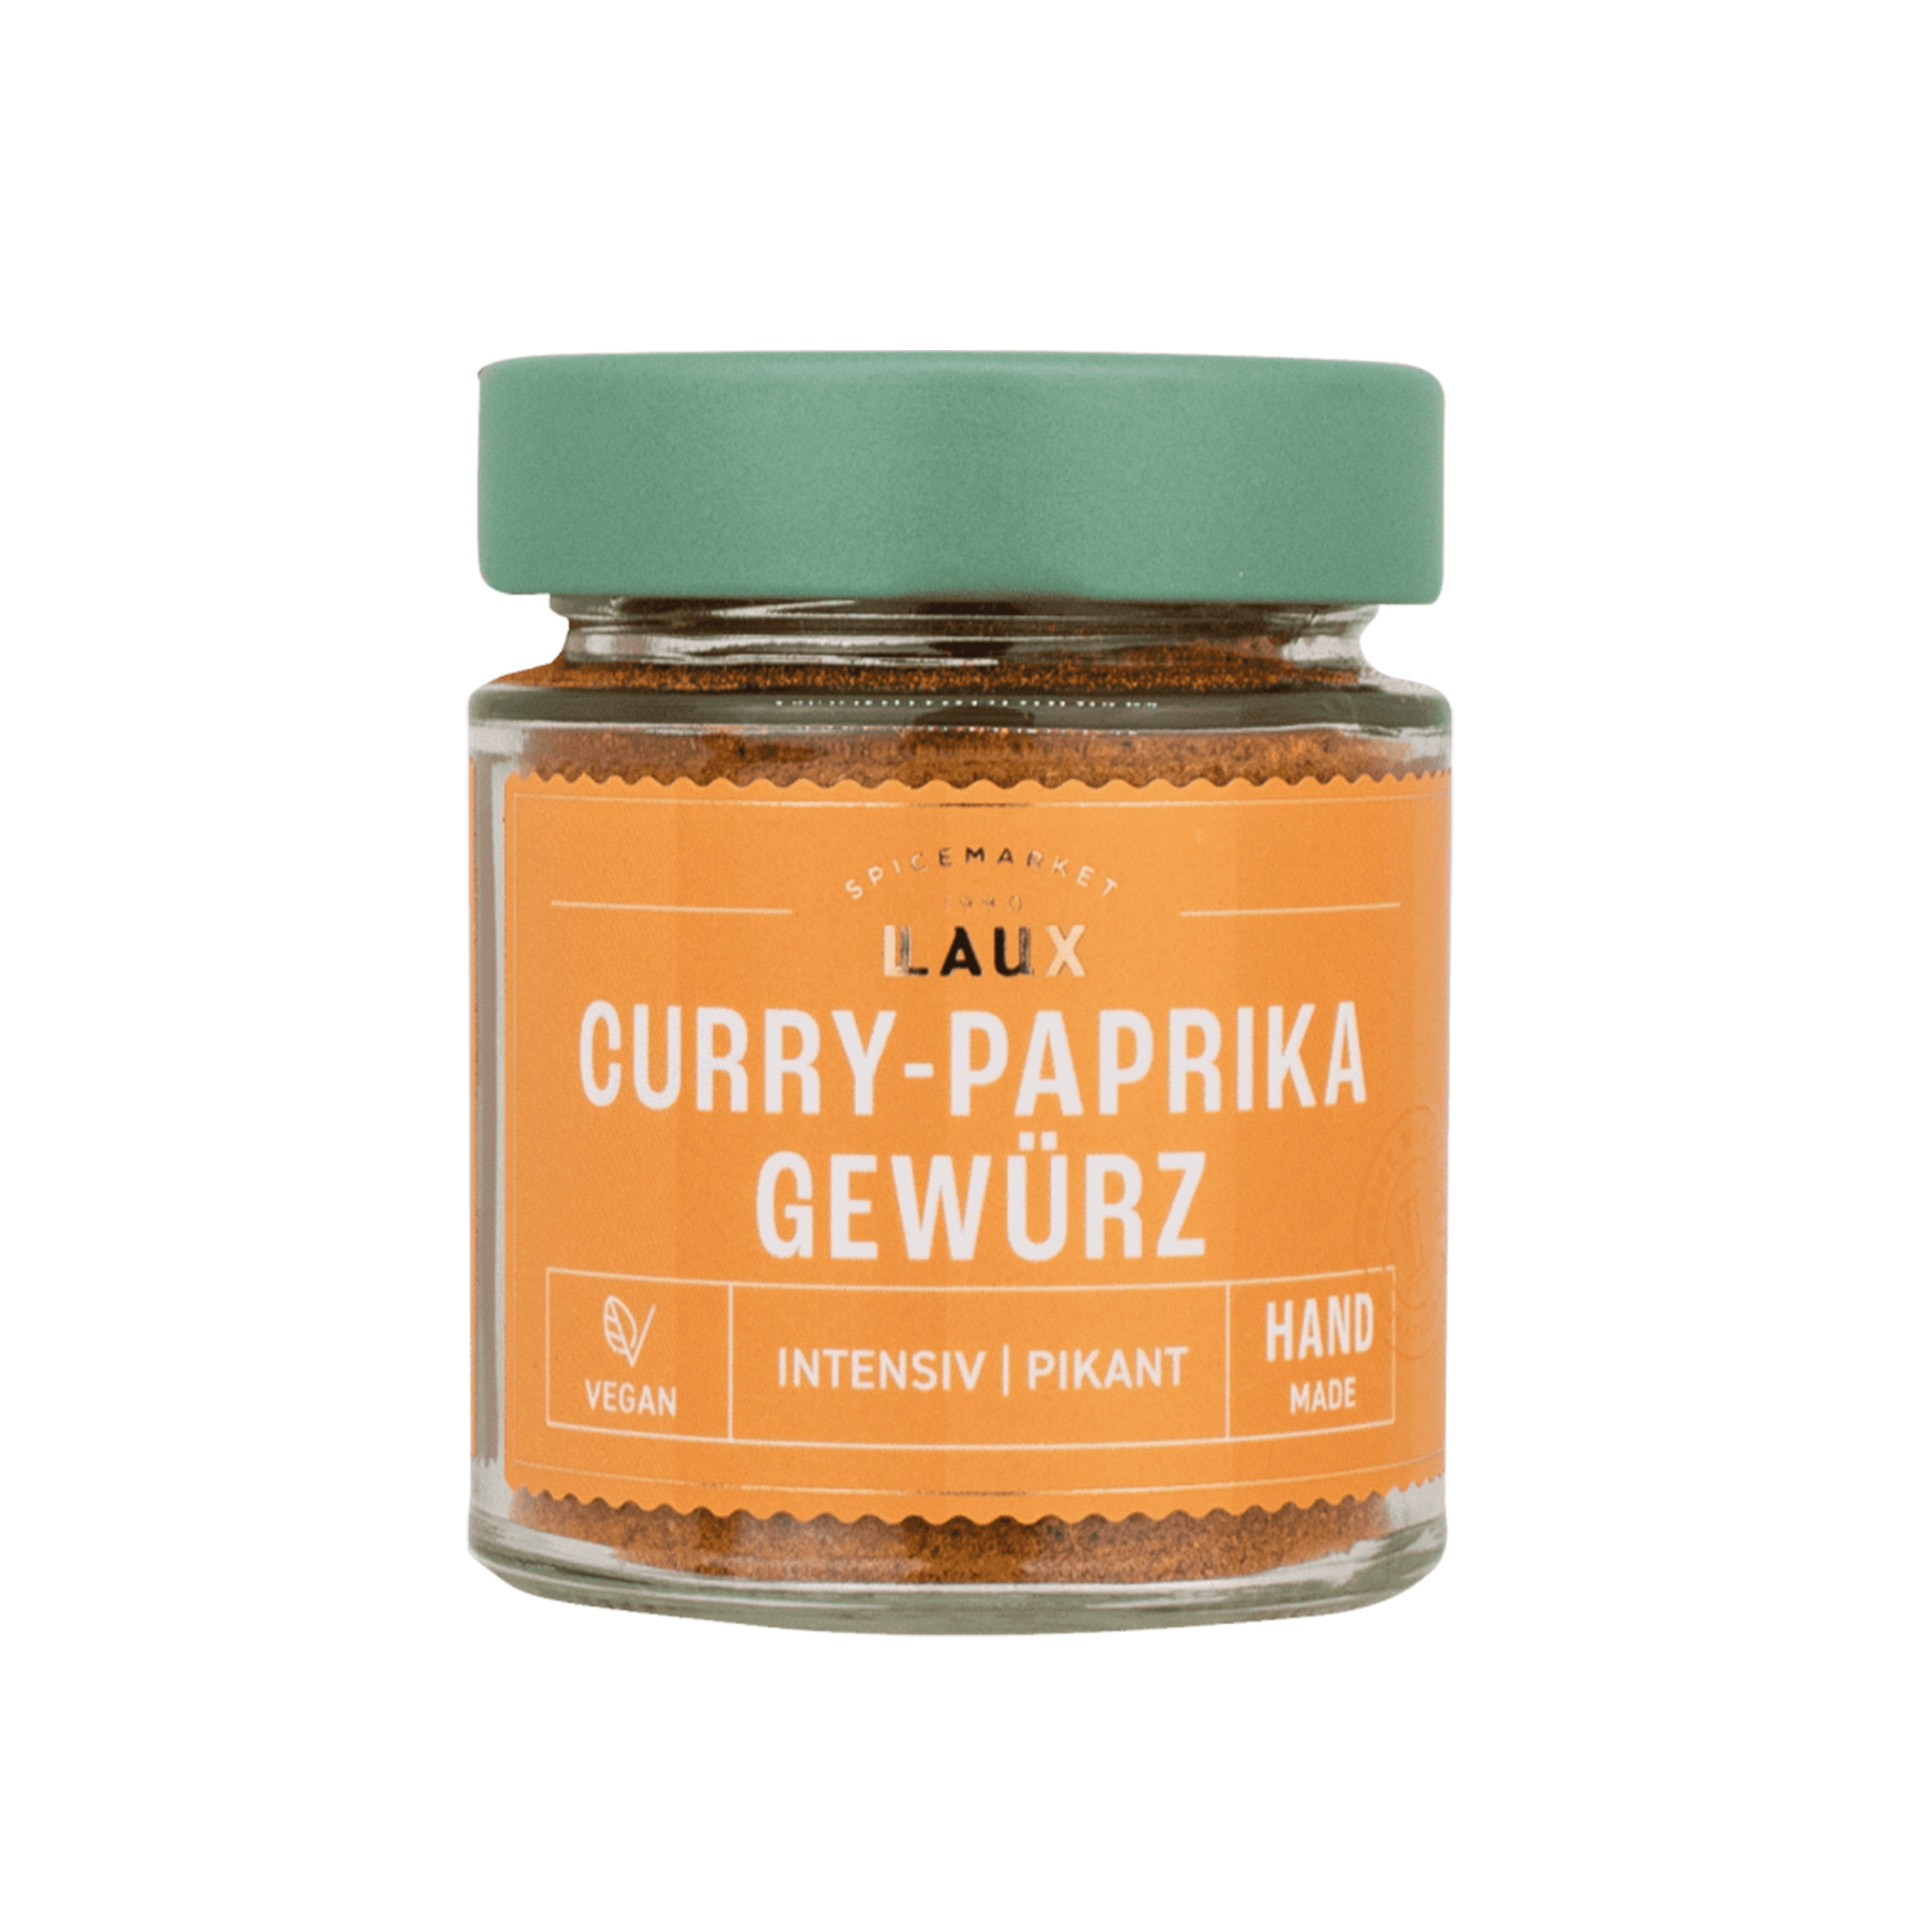 Curry-Paprika Gewürz im Glas mit grünem Schraubdeckel